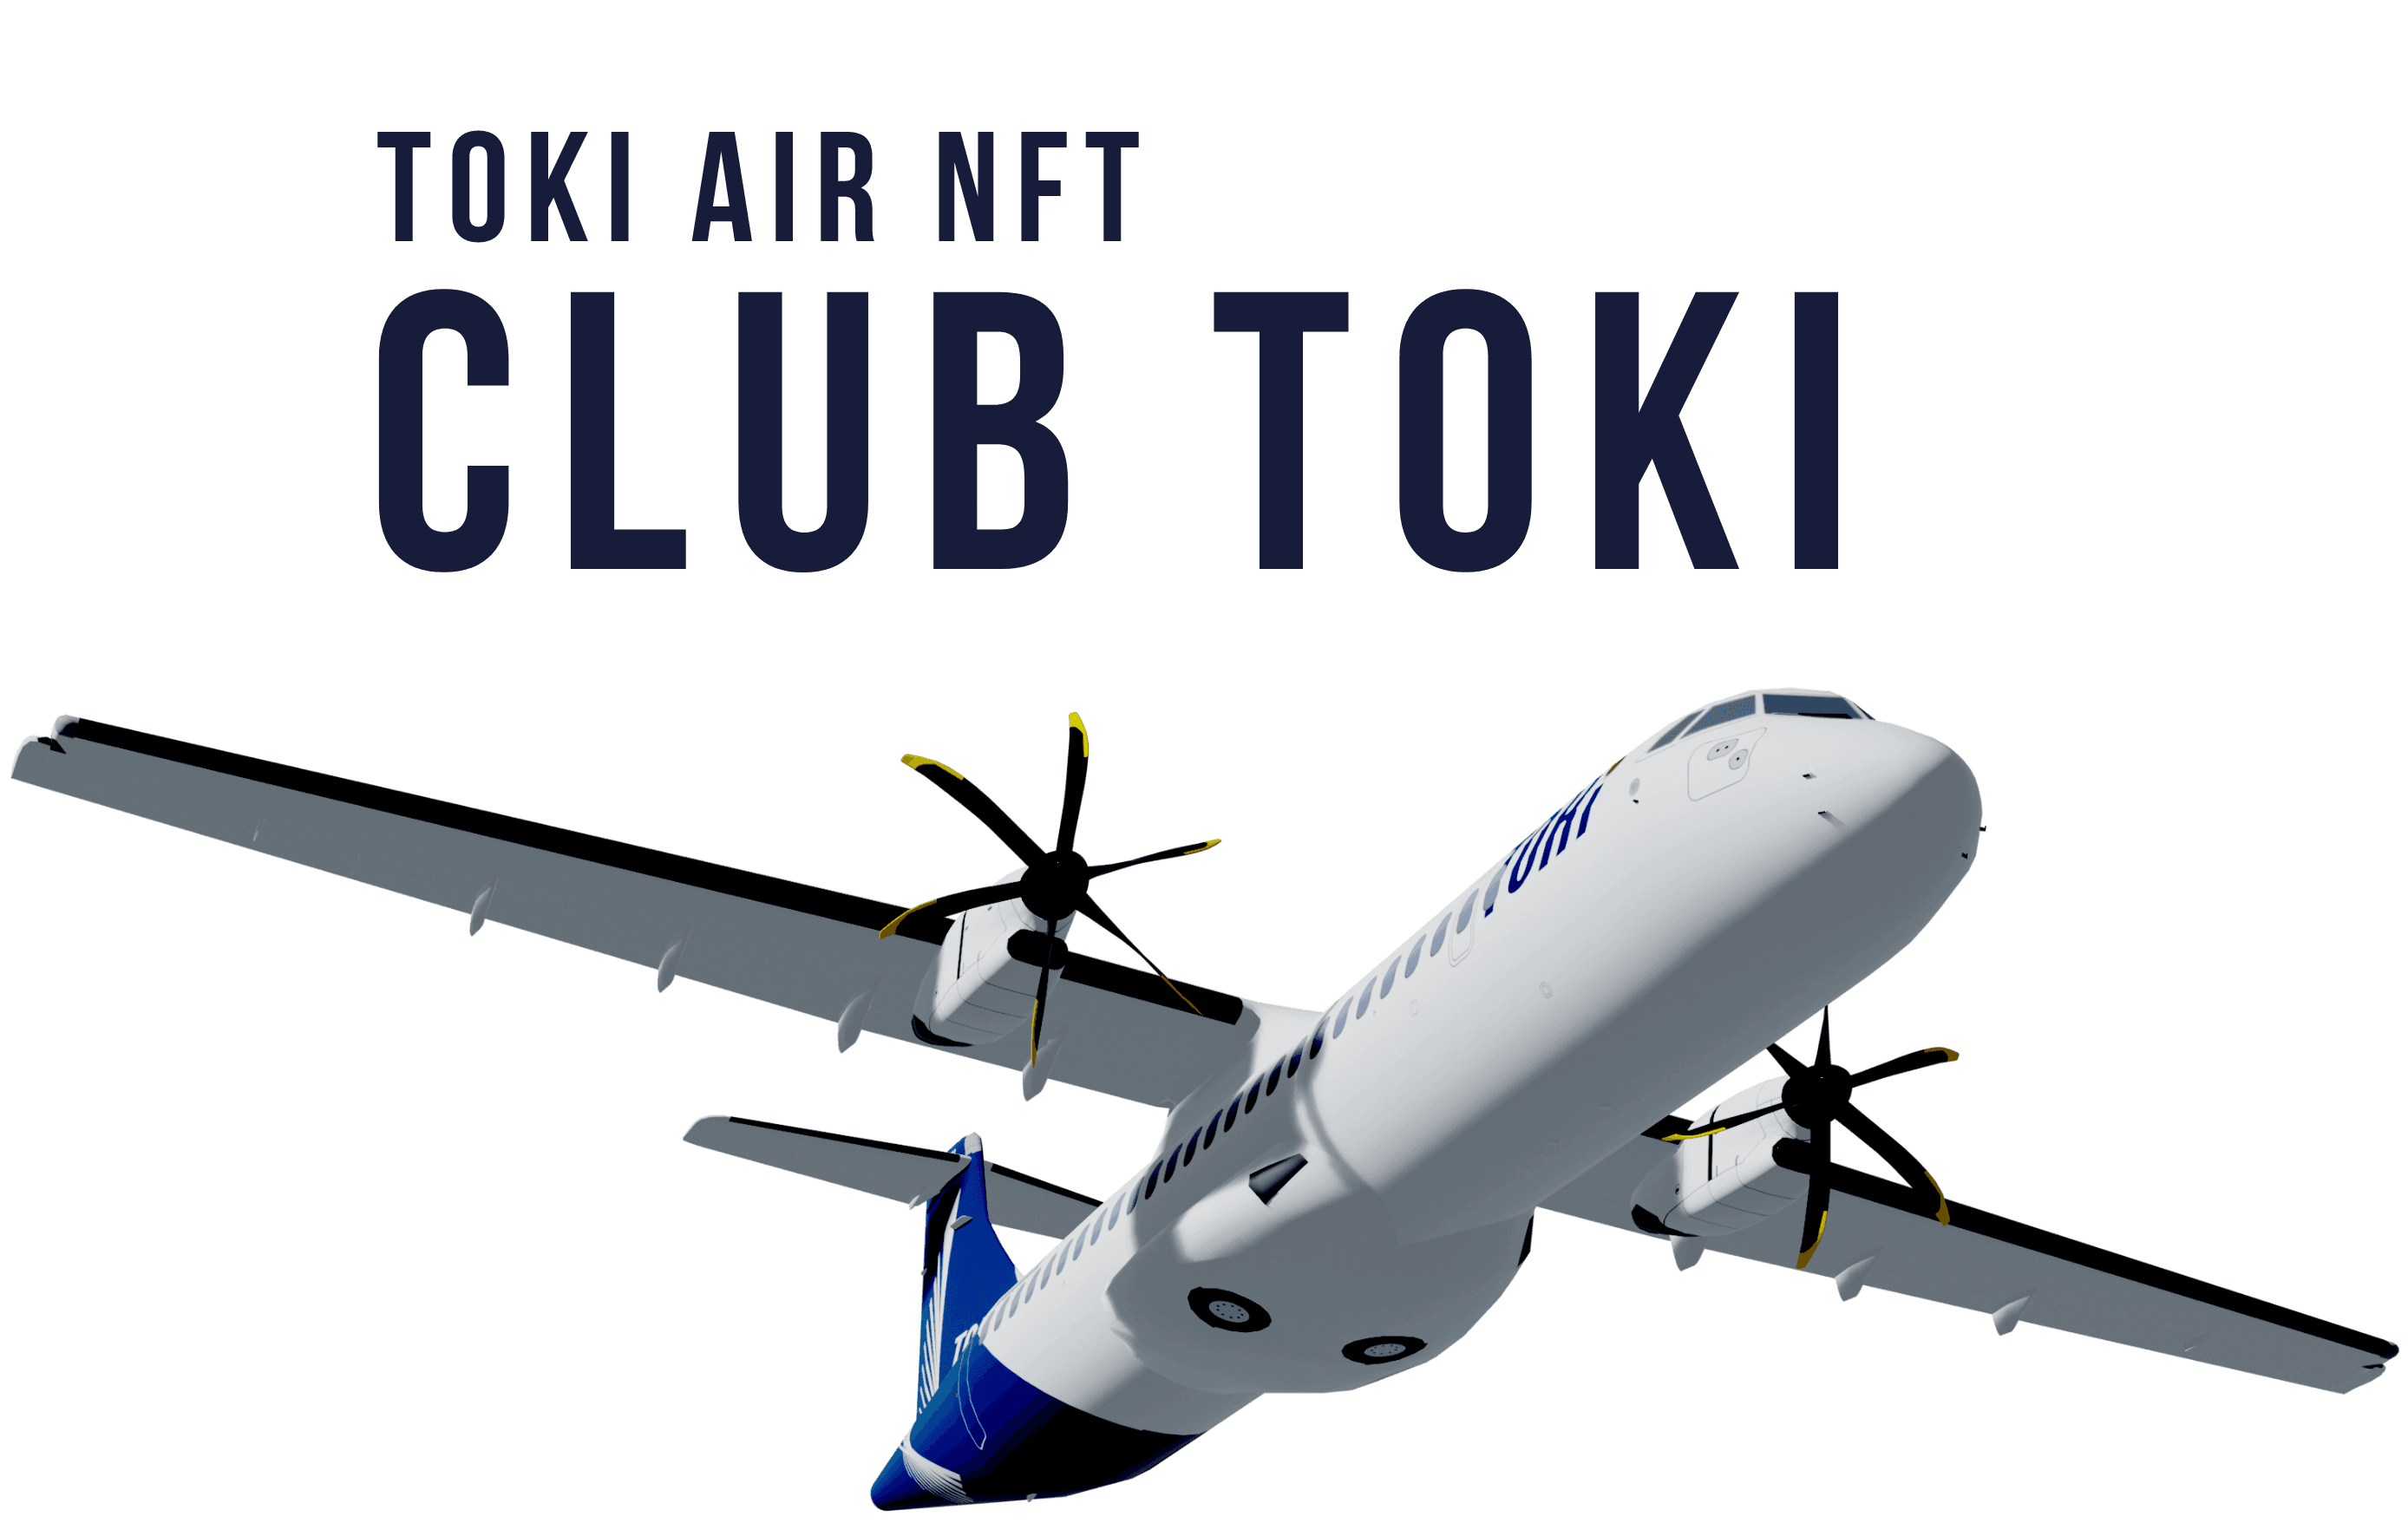 TOKI AIR NFT CLUB TOKI